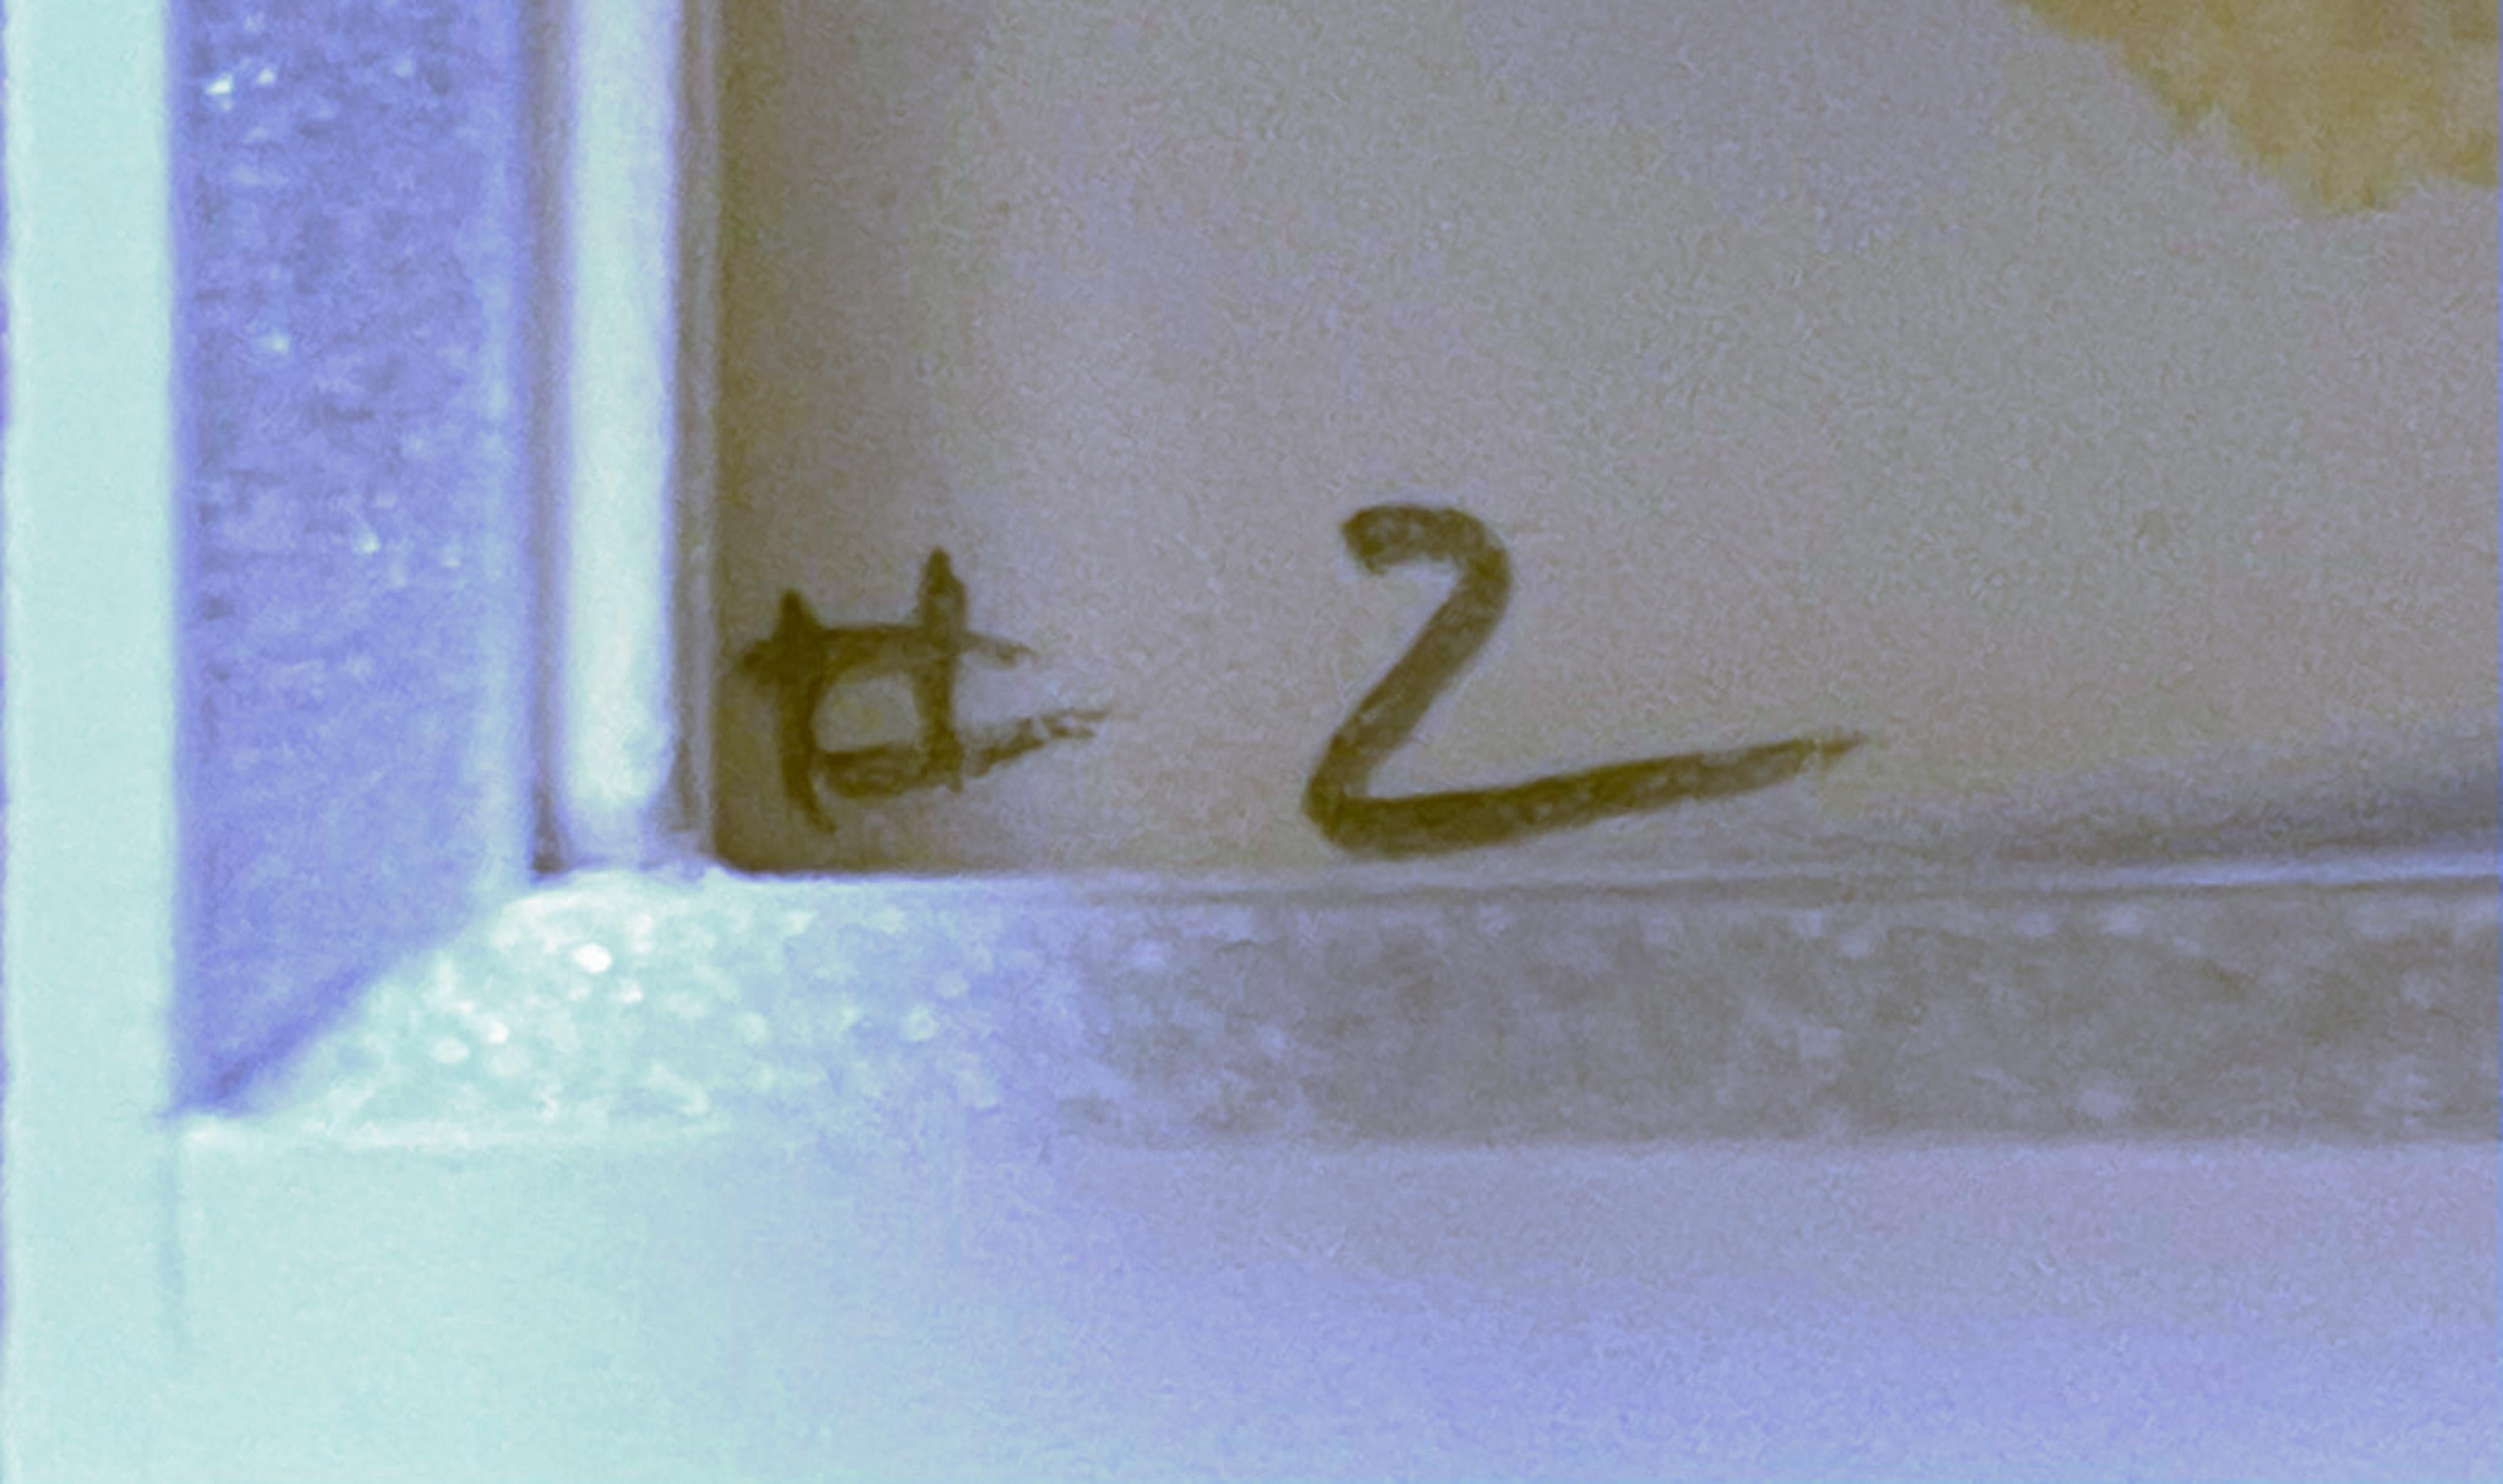 Thomas Nozkowski
Sans titre #2, 2008
Gravure en couleur avec aquatinte sur papier Hahnemühle
Signé et numéroté 5/35 au graphite au dos. Le rabat de la fenêtre découpée à l'arrière du cadre révèle la signature.
Cadre inclus
Flotté et encadré de